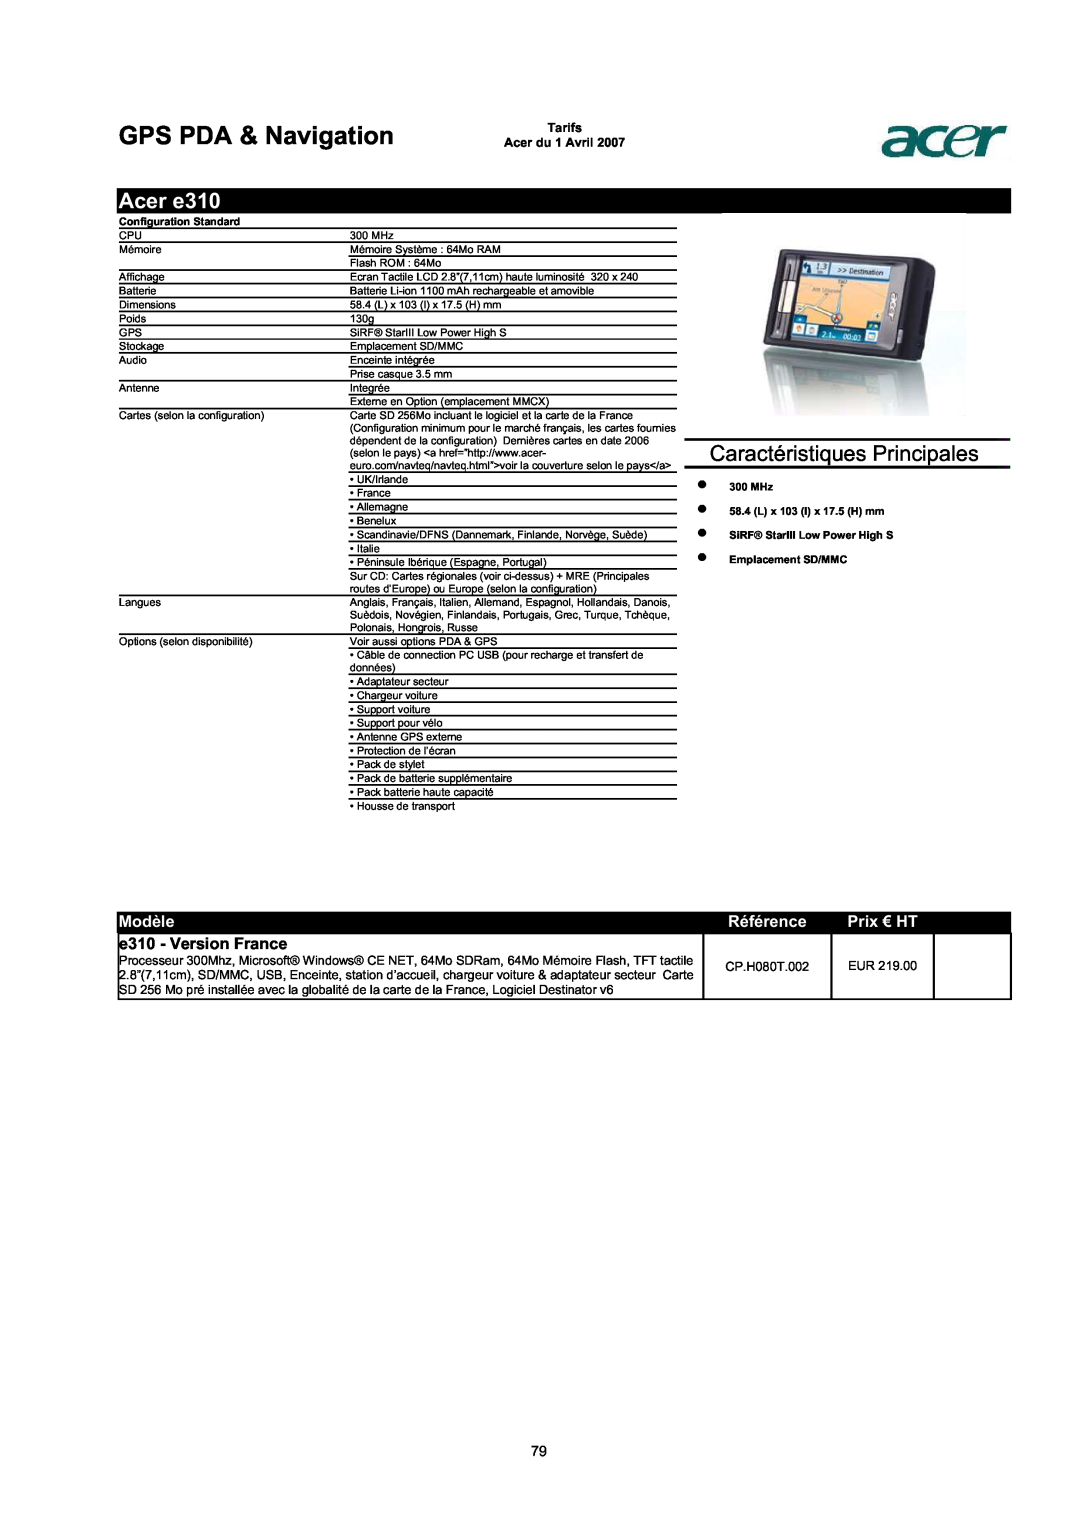 Acer AC713B-17 GPS PDA & Navigation, Acer e310, e310 - Version France, Caractéristiques Principales, Modèle, Référence 